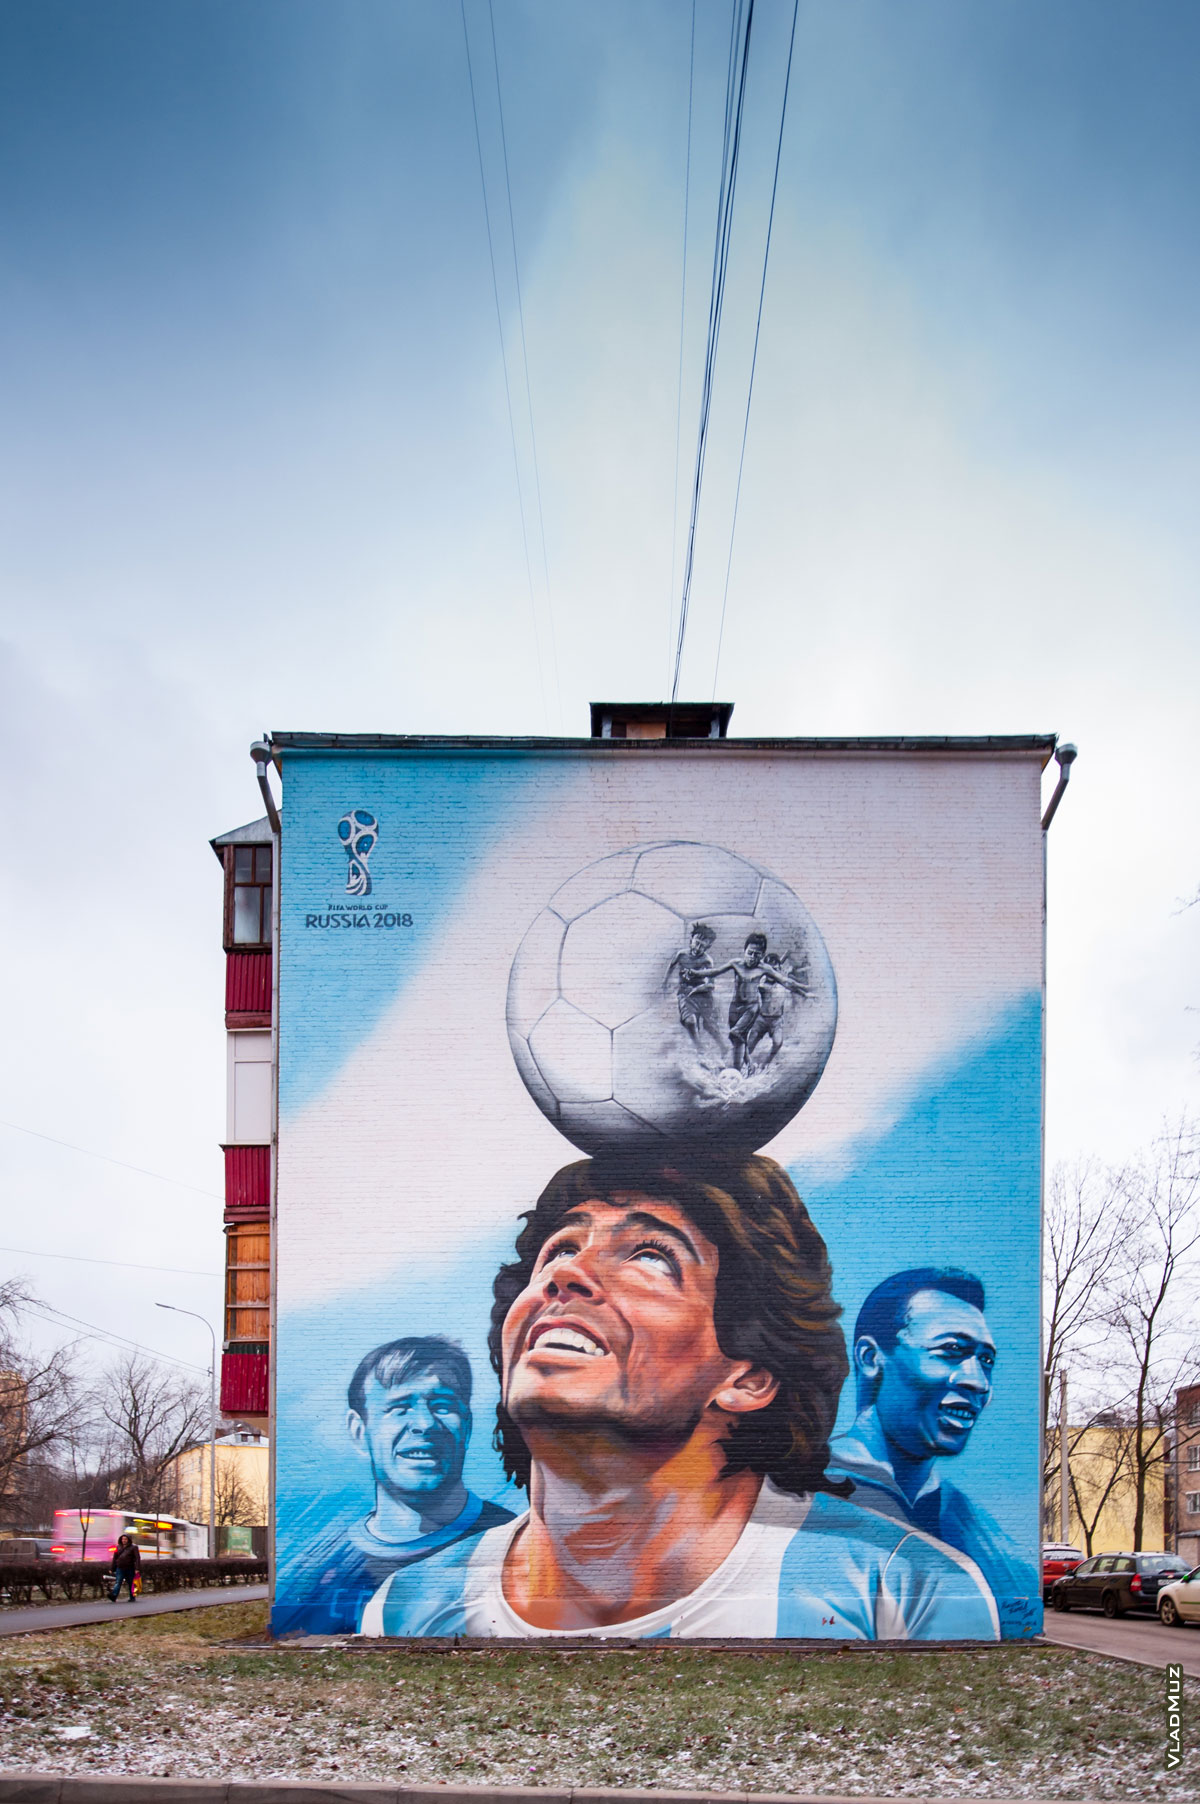 Футбольное граффити в городе Королёве на улице Коминтерна, посвященное Чемпионату мира по футболу 2018